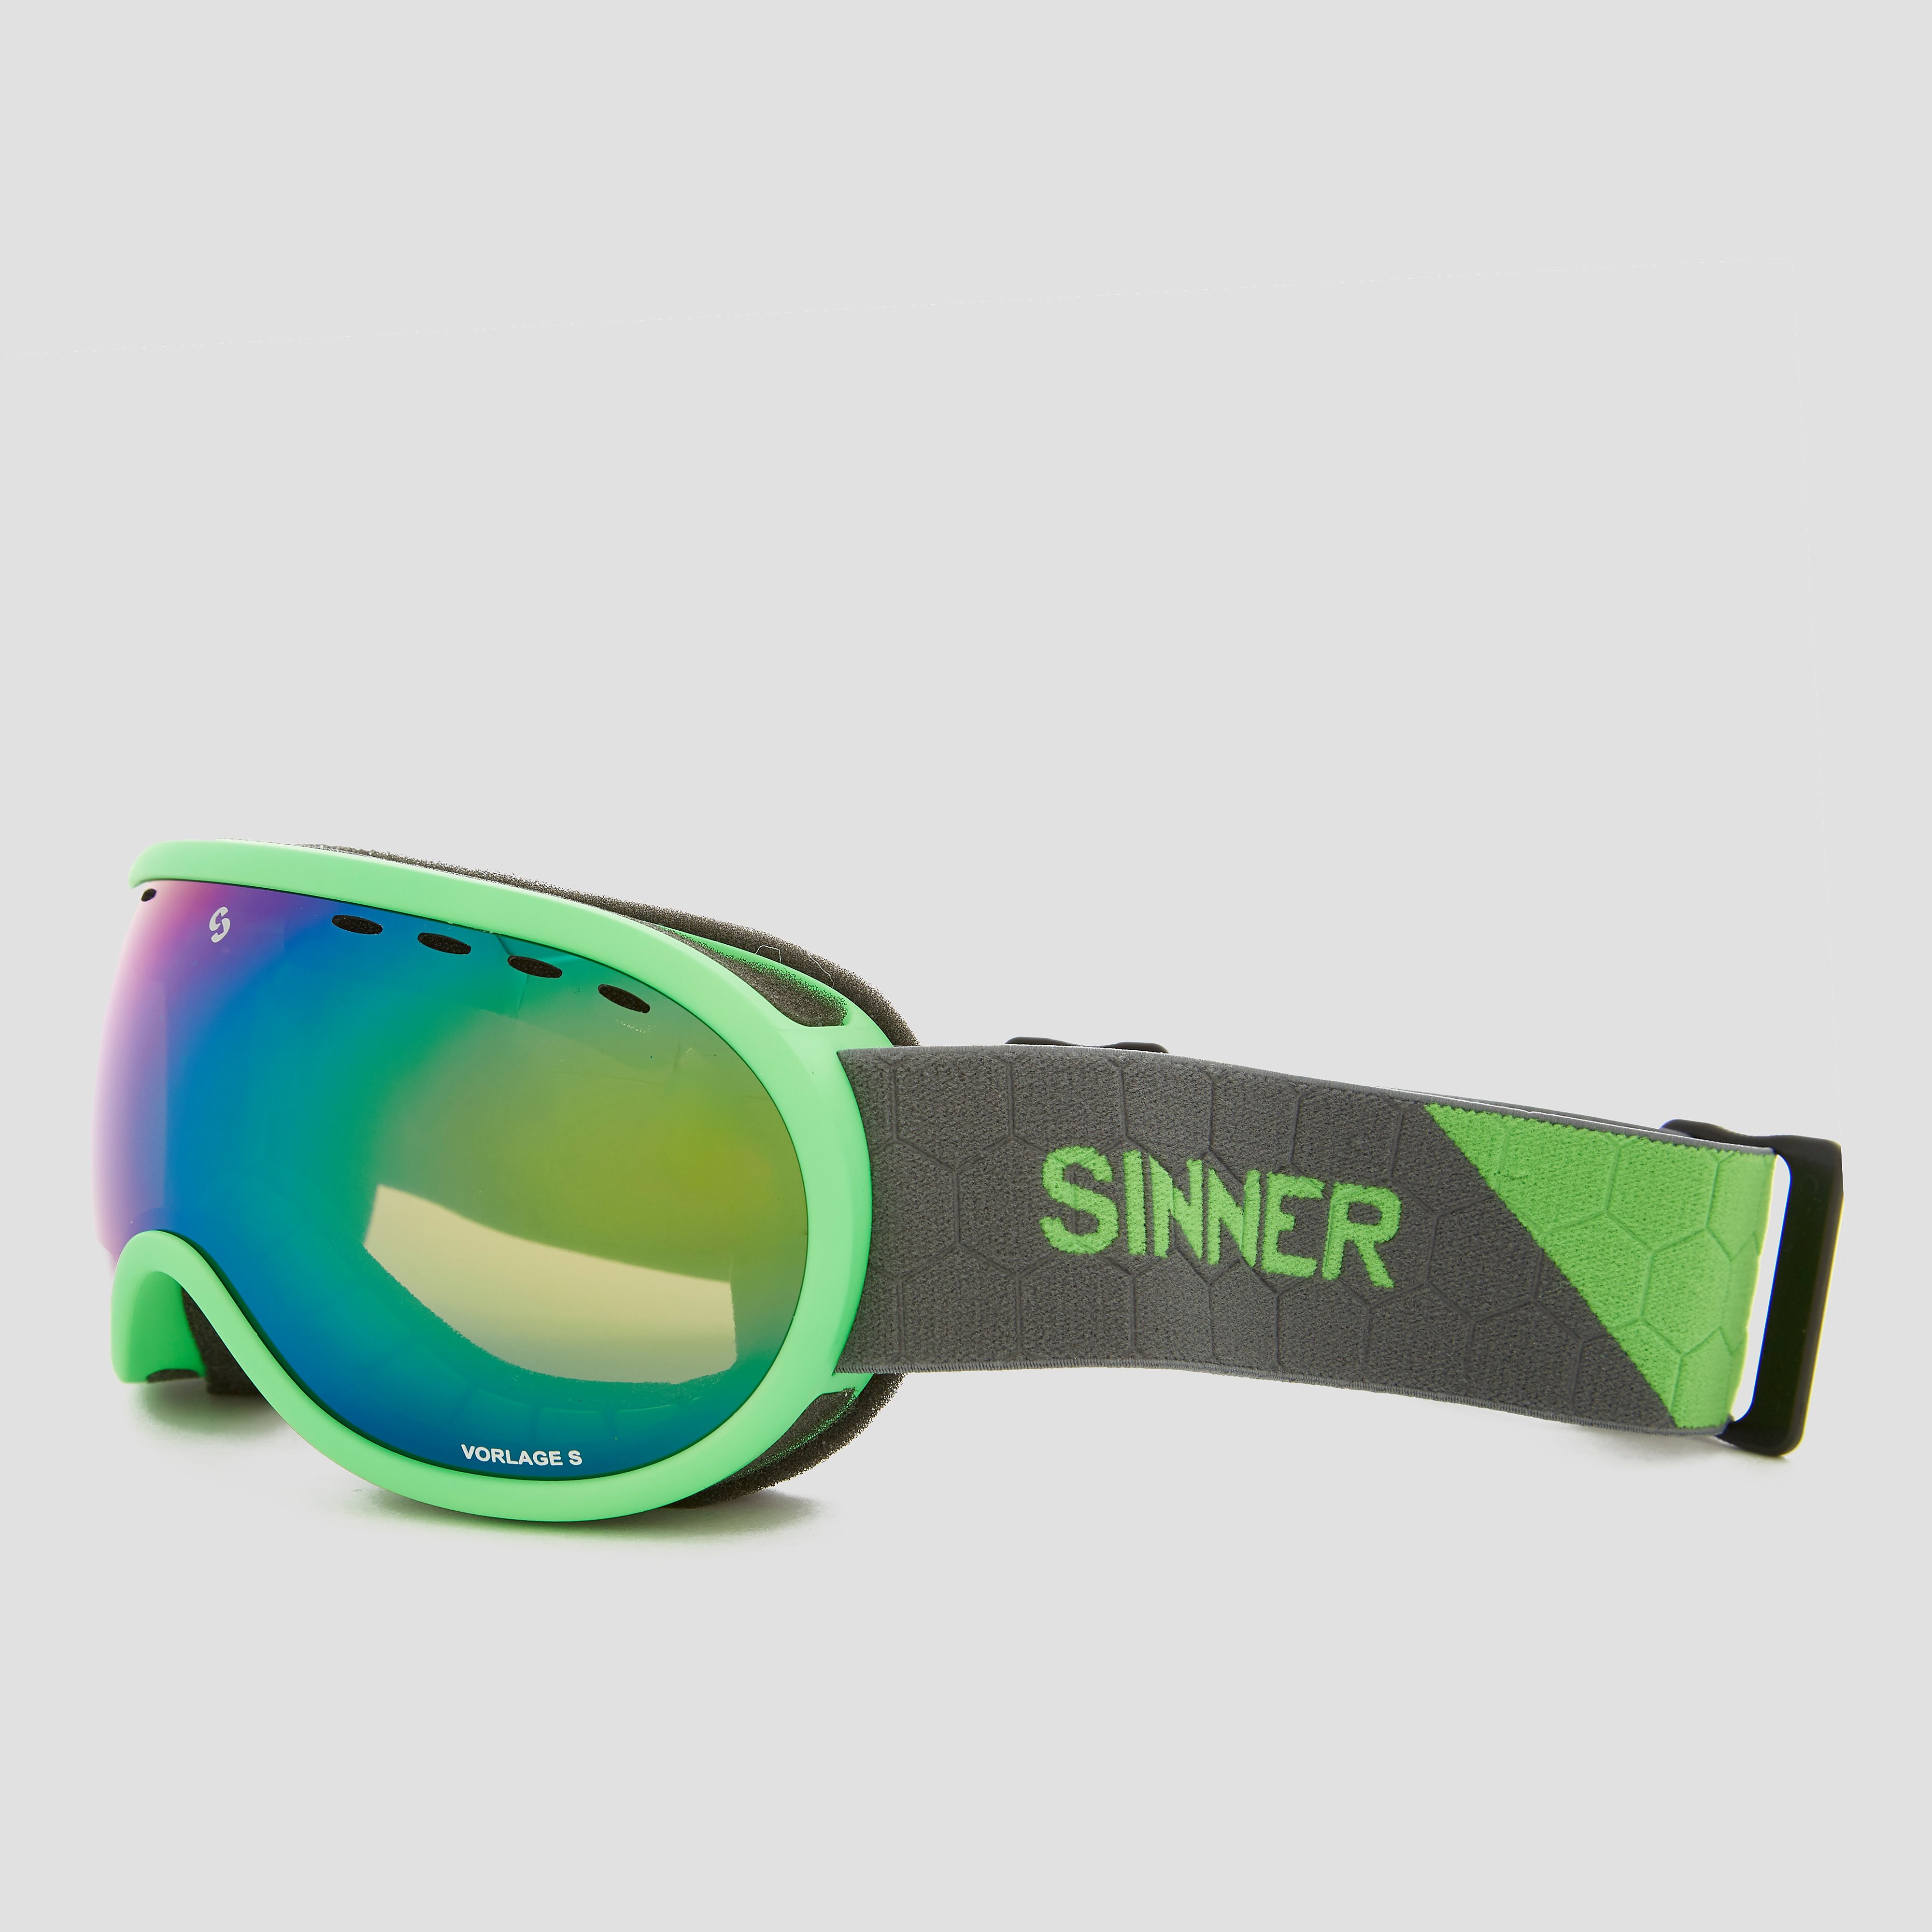 Sinner vorlage skibril small groen